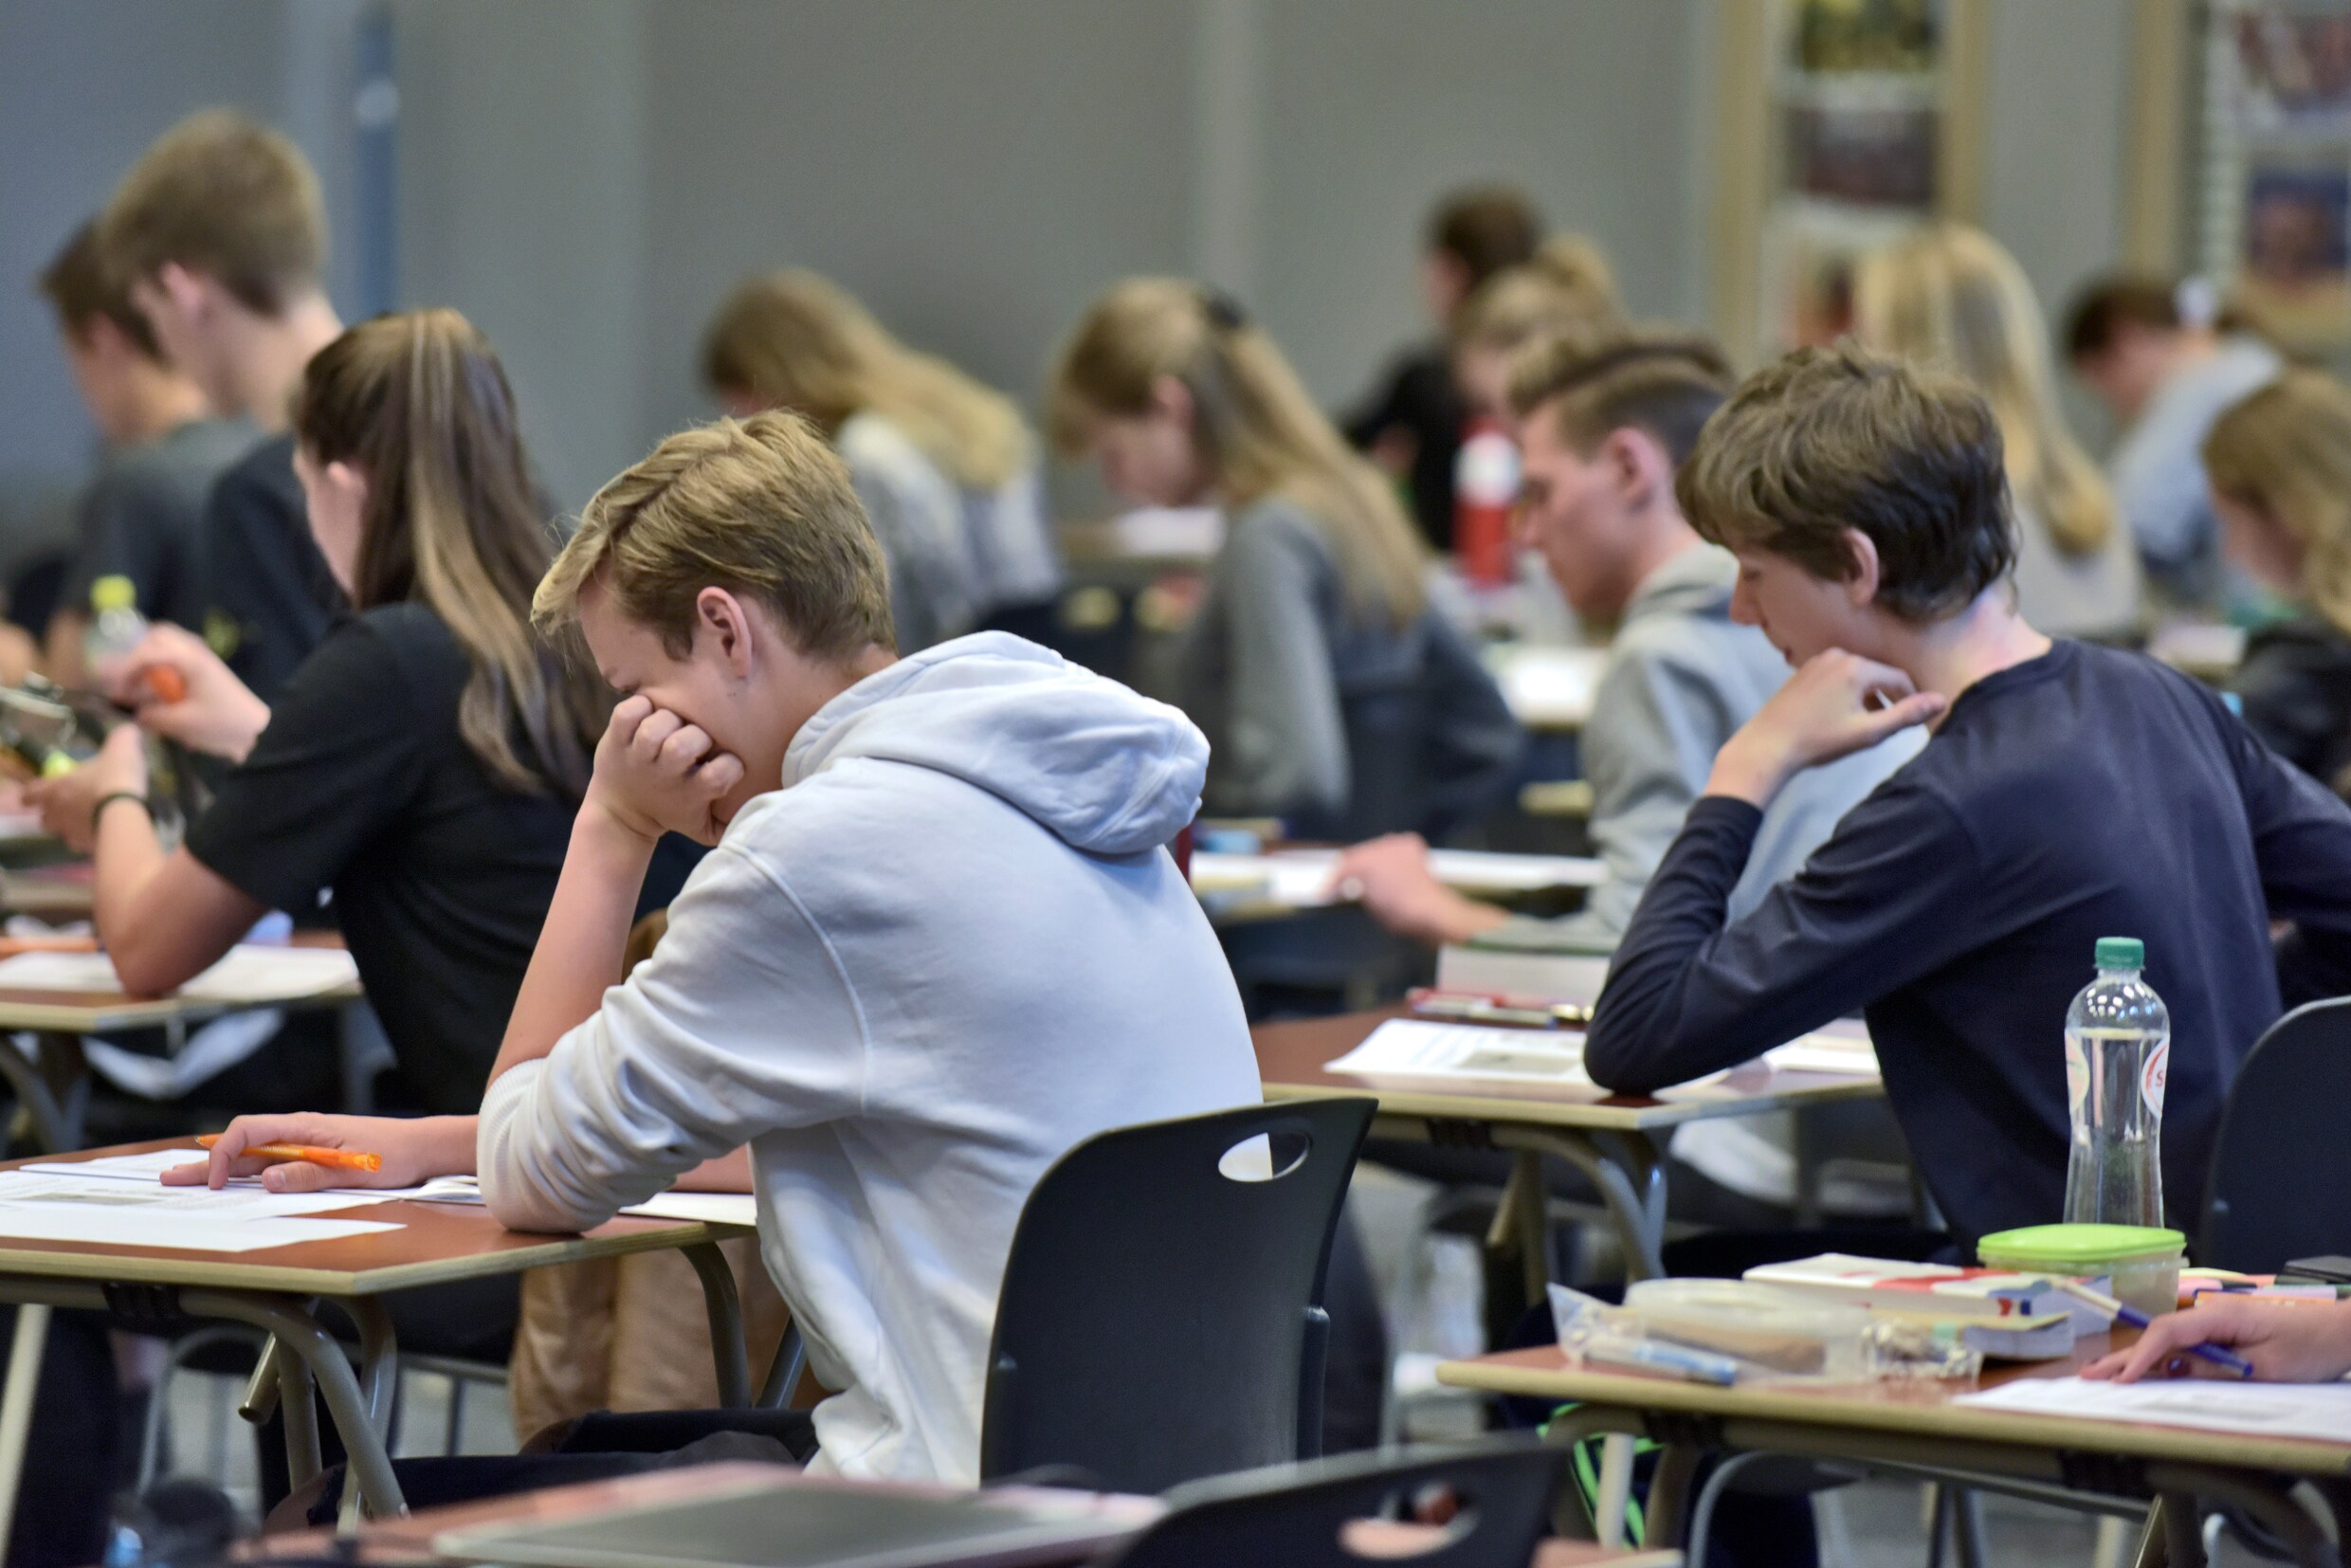 Centrale toetsen voor Vlaamse leerlingen vanaf 2023: ‘Niet afrekenen, maar ondersteunen’